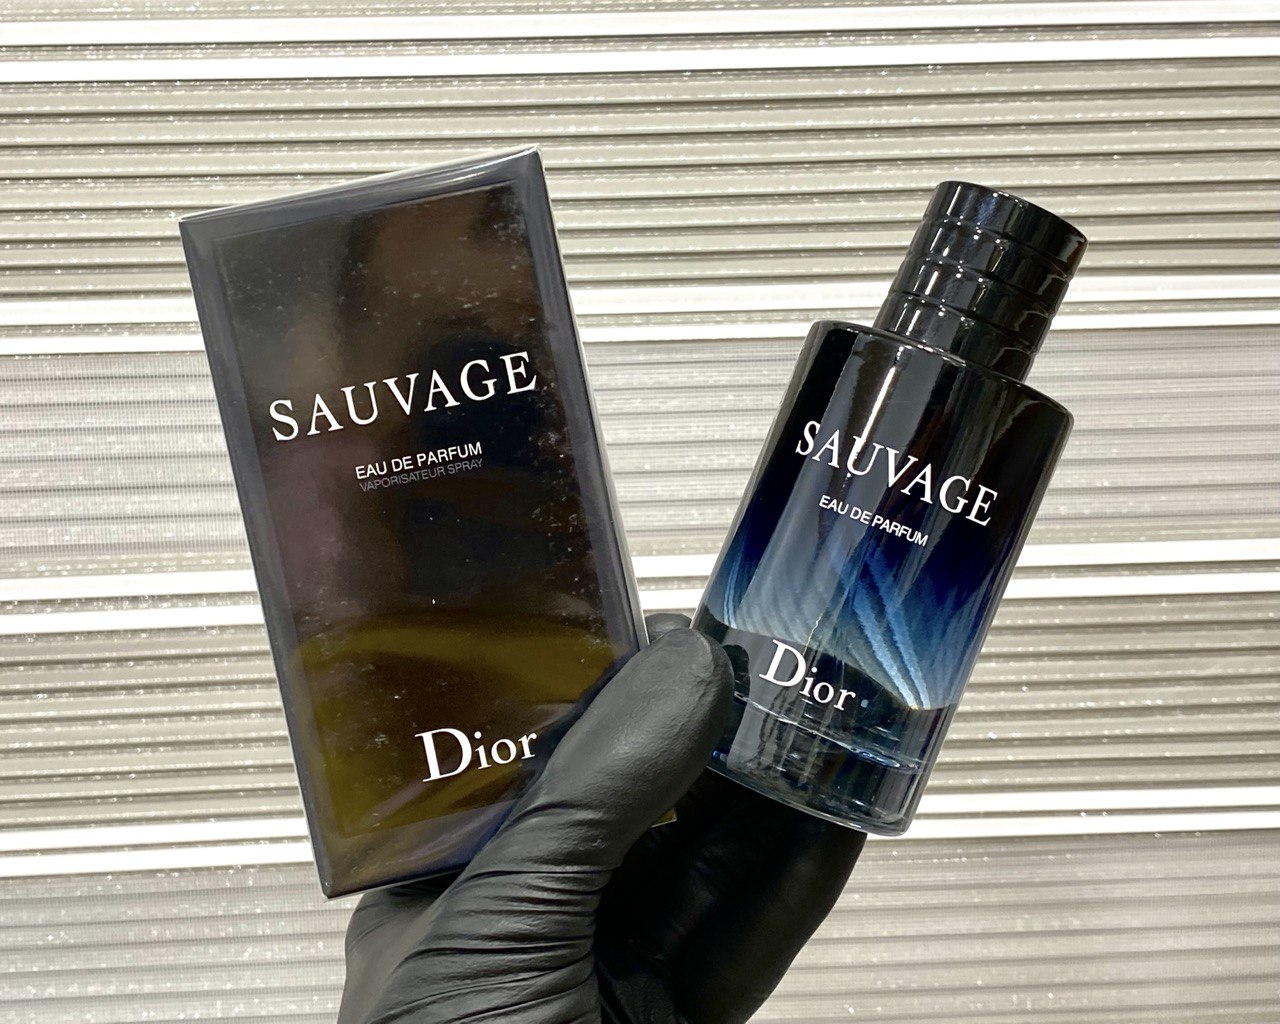 ادکلن دیور ساواج ادو پرفیوم Dior Sauvage Eau de Parfum